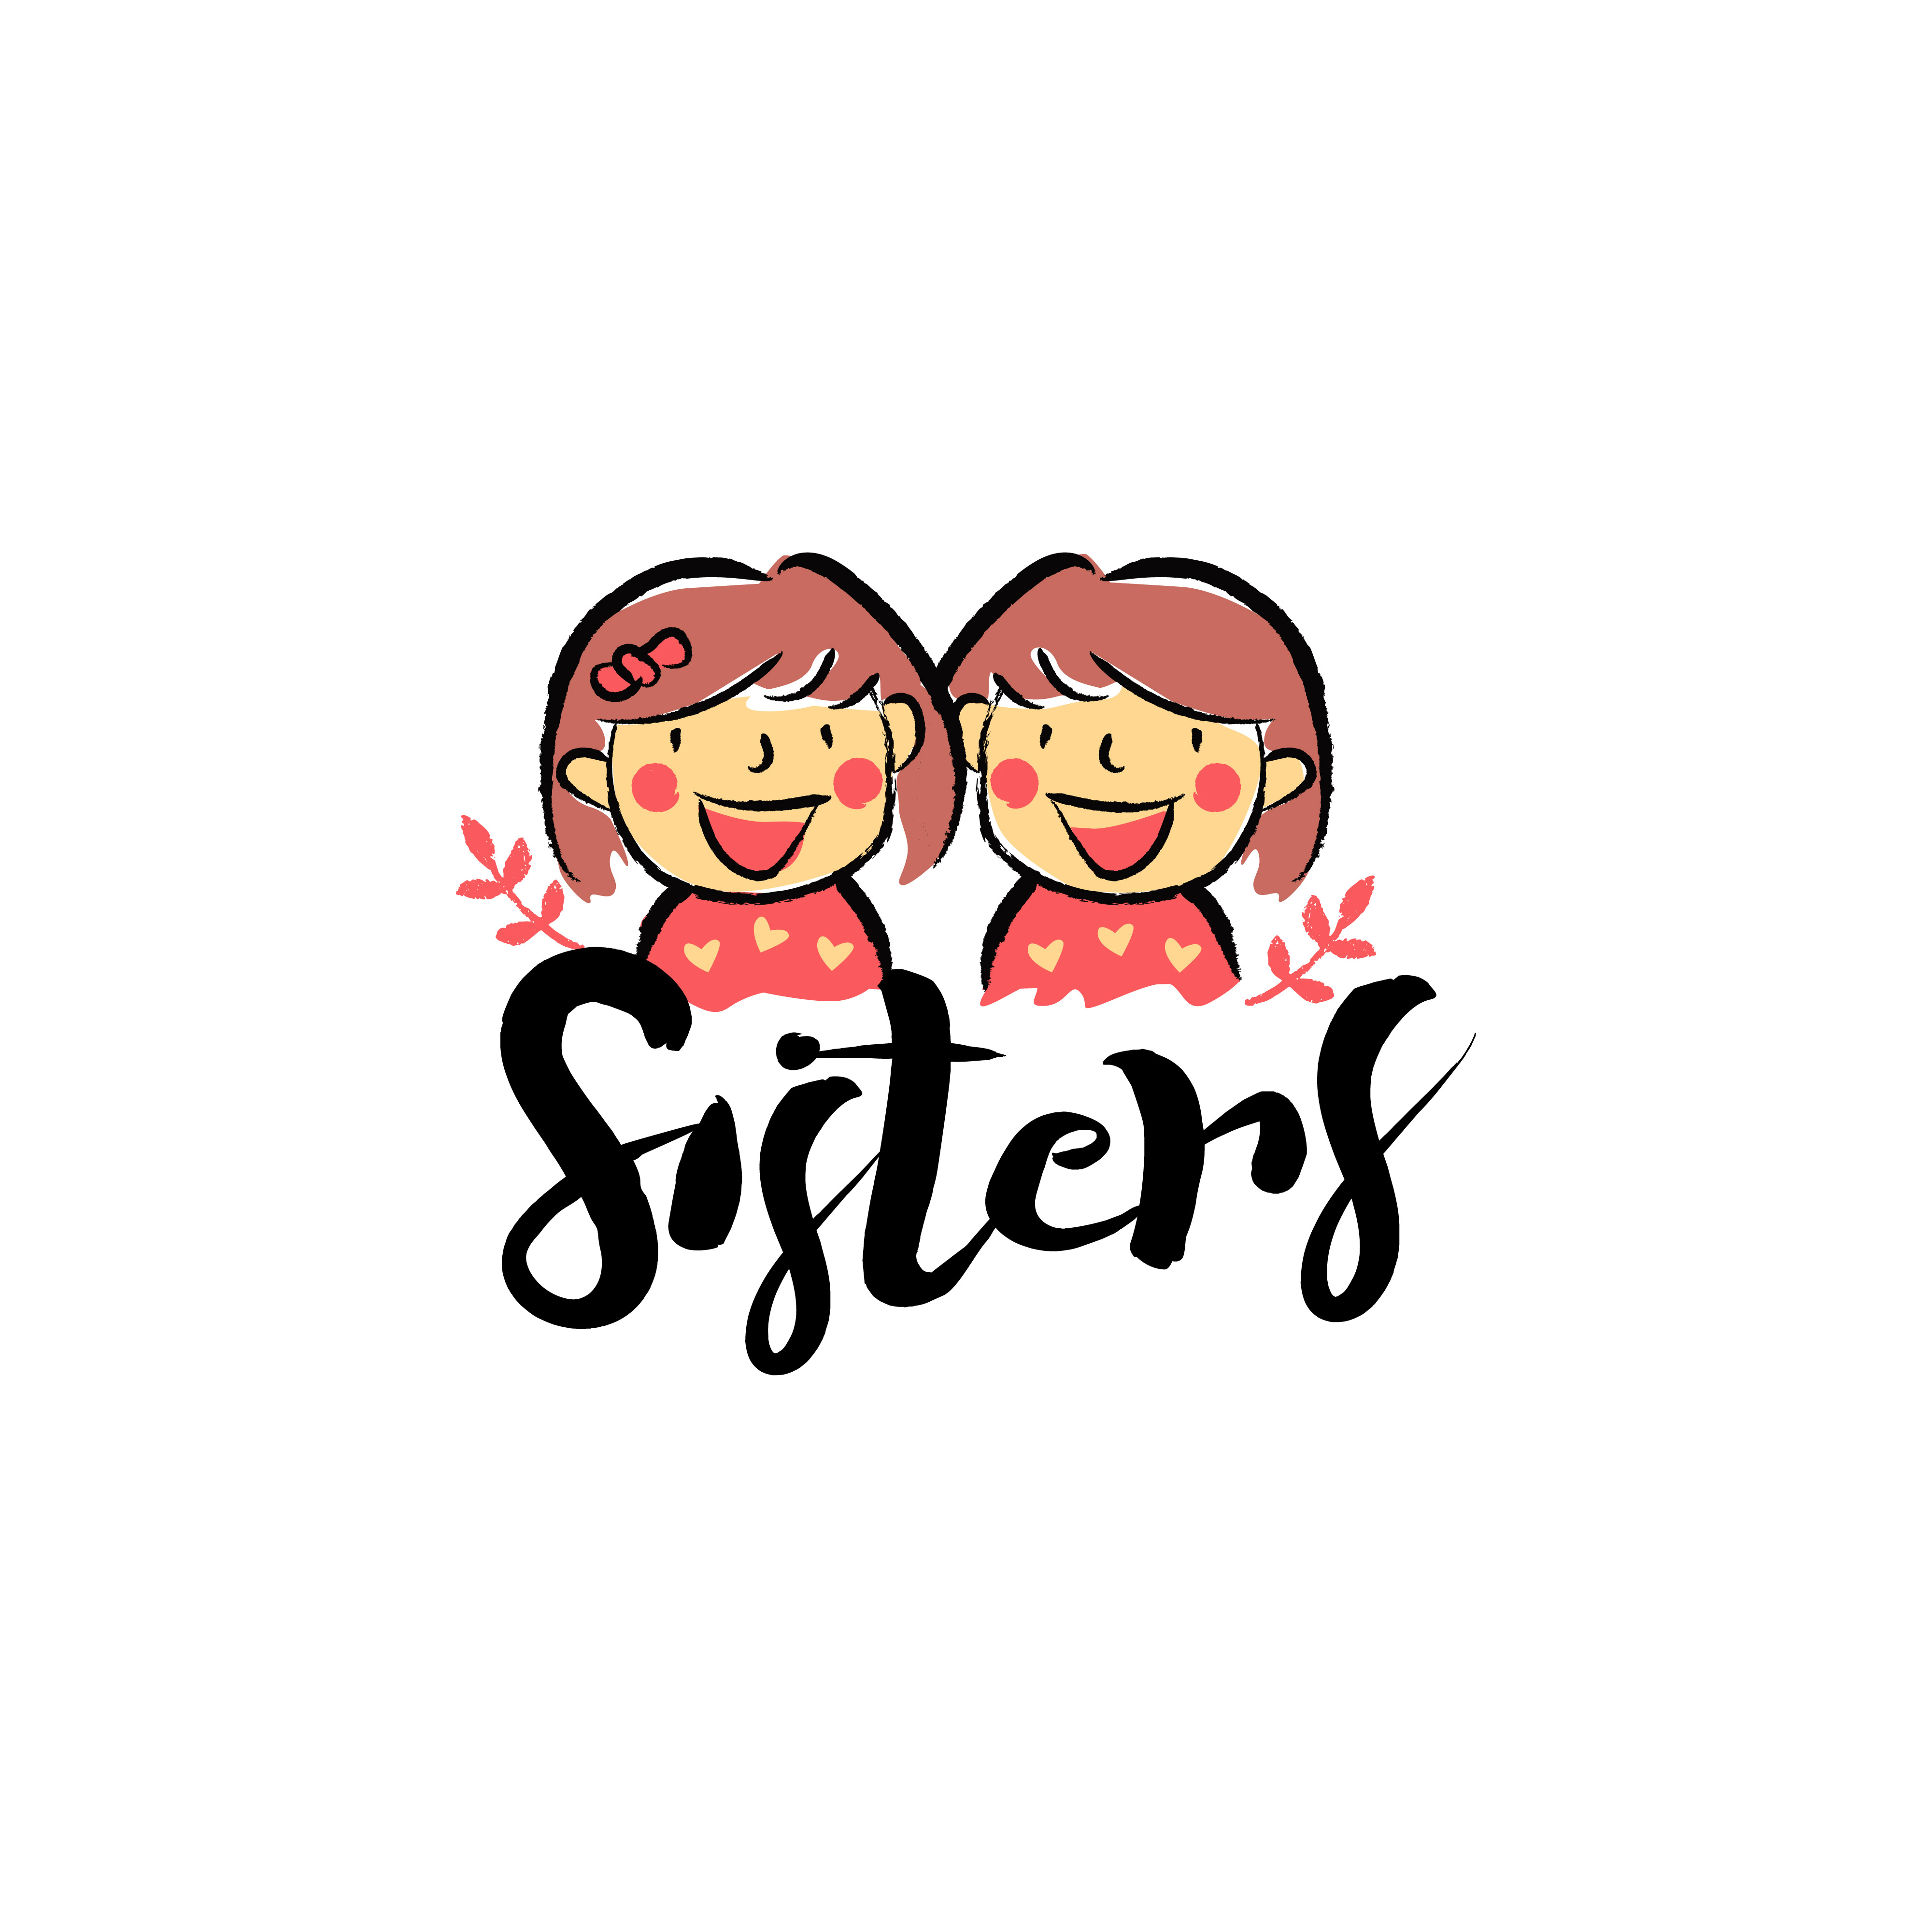 Bro and Sis logo by Samim Mia on Dribbble